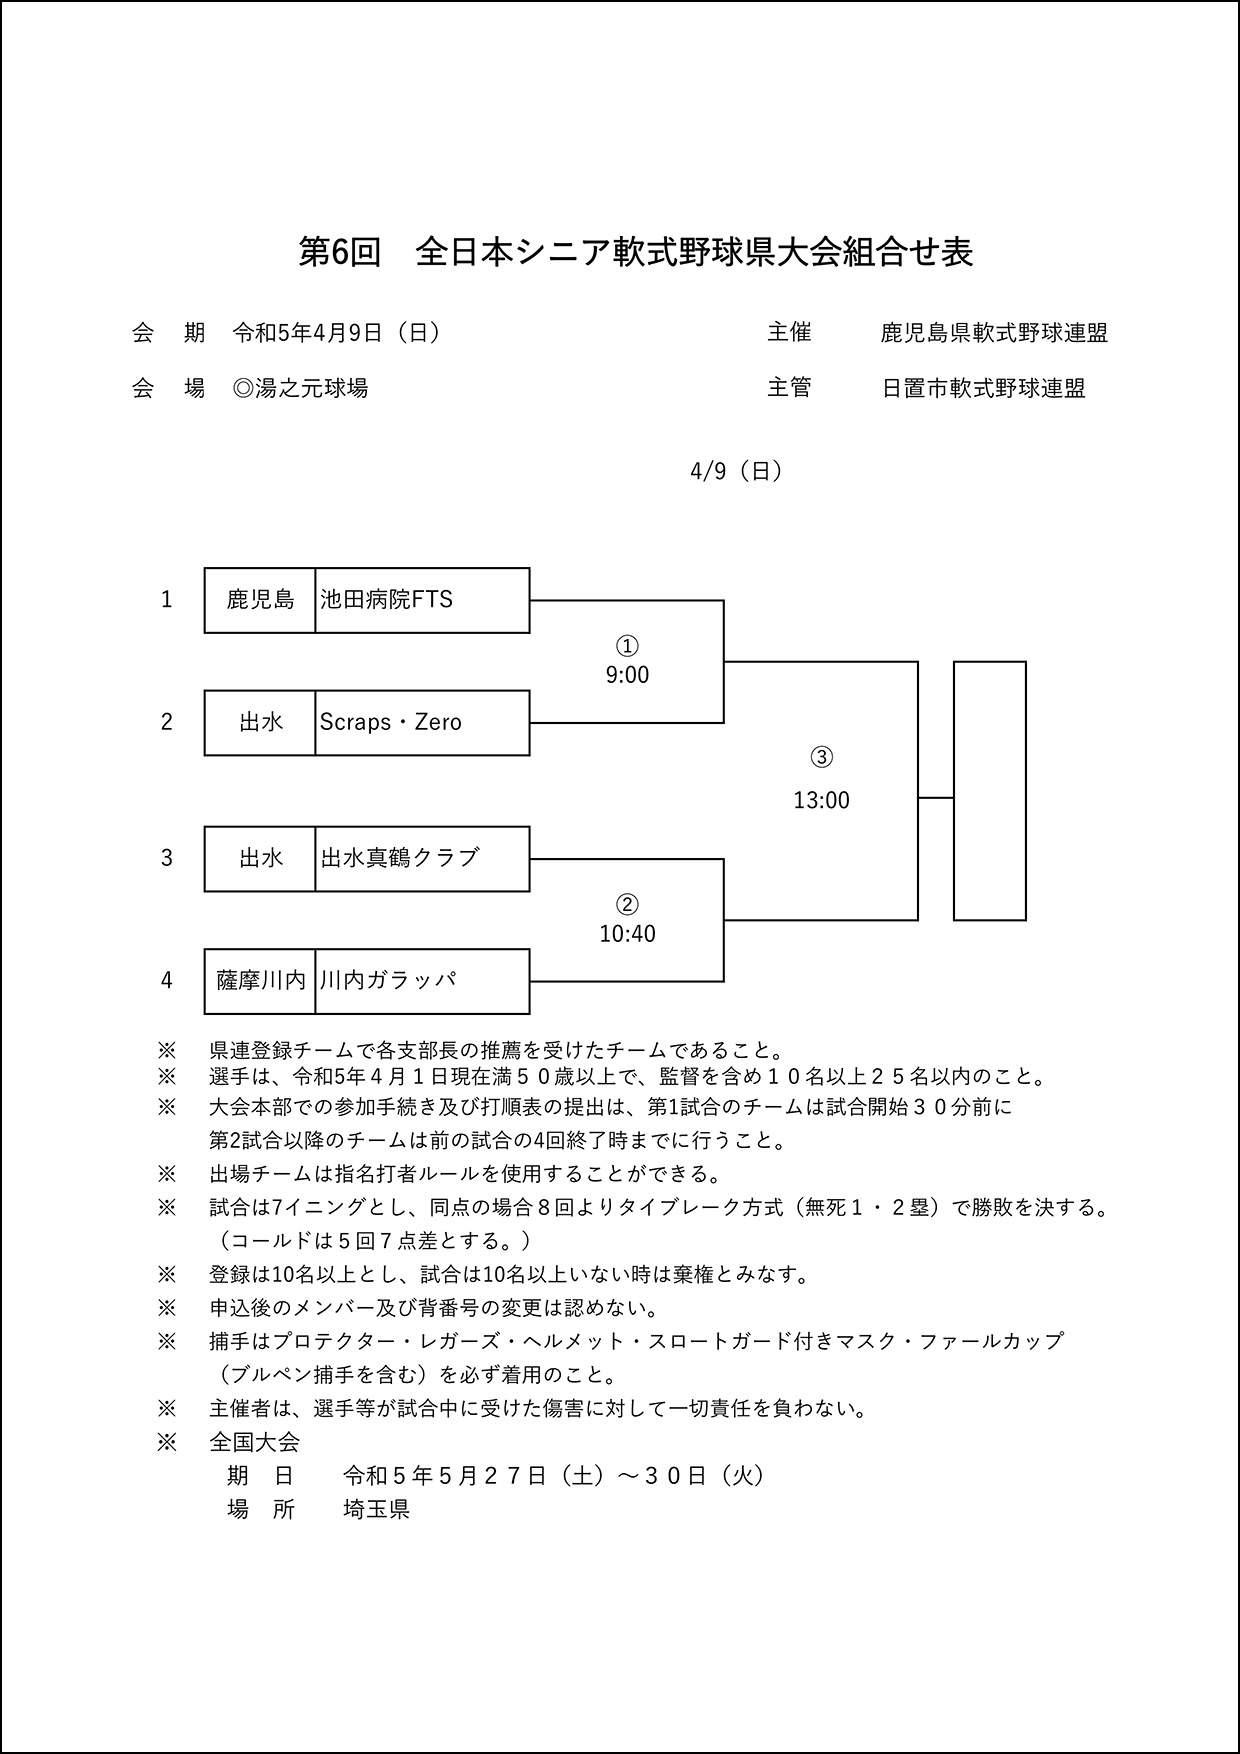 【組合せ】第6回全日本シニア軟式野球県大会